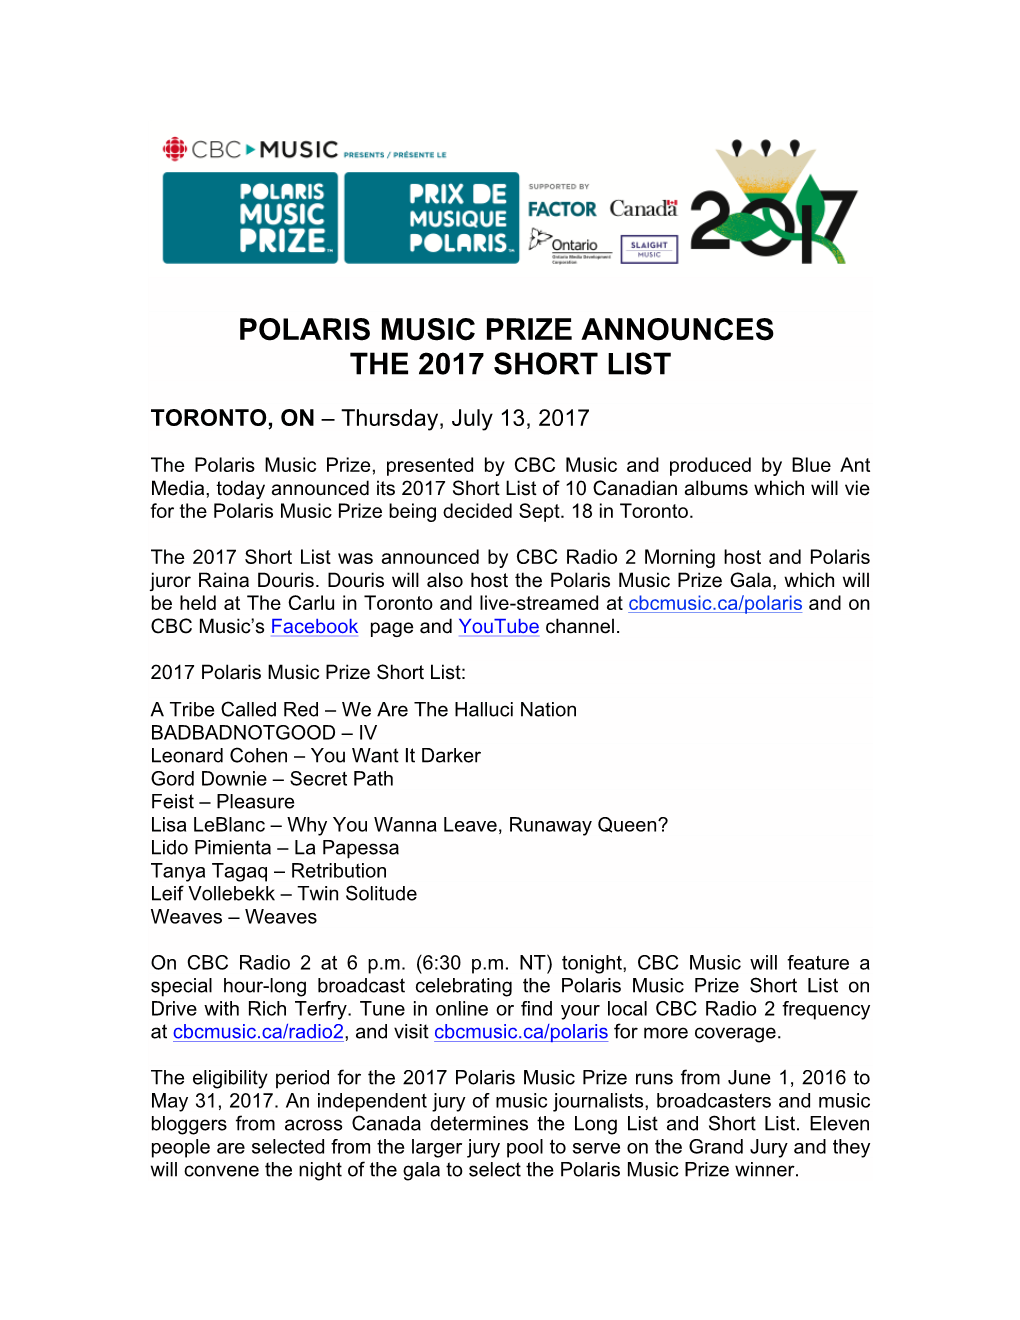 Polaris Music Prize Announces the 2017 Short List